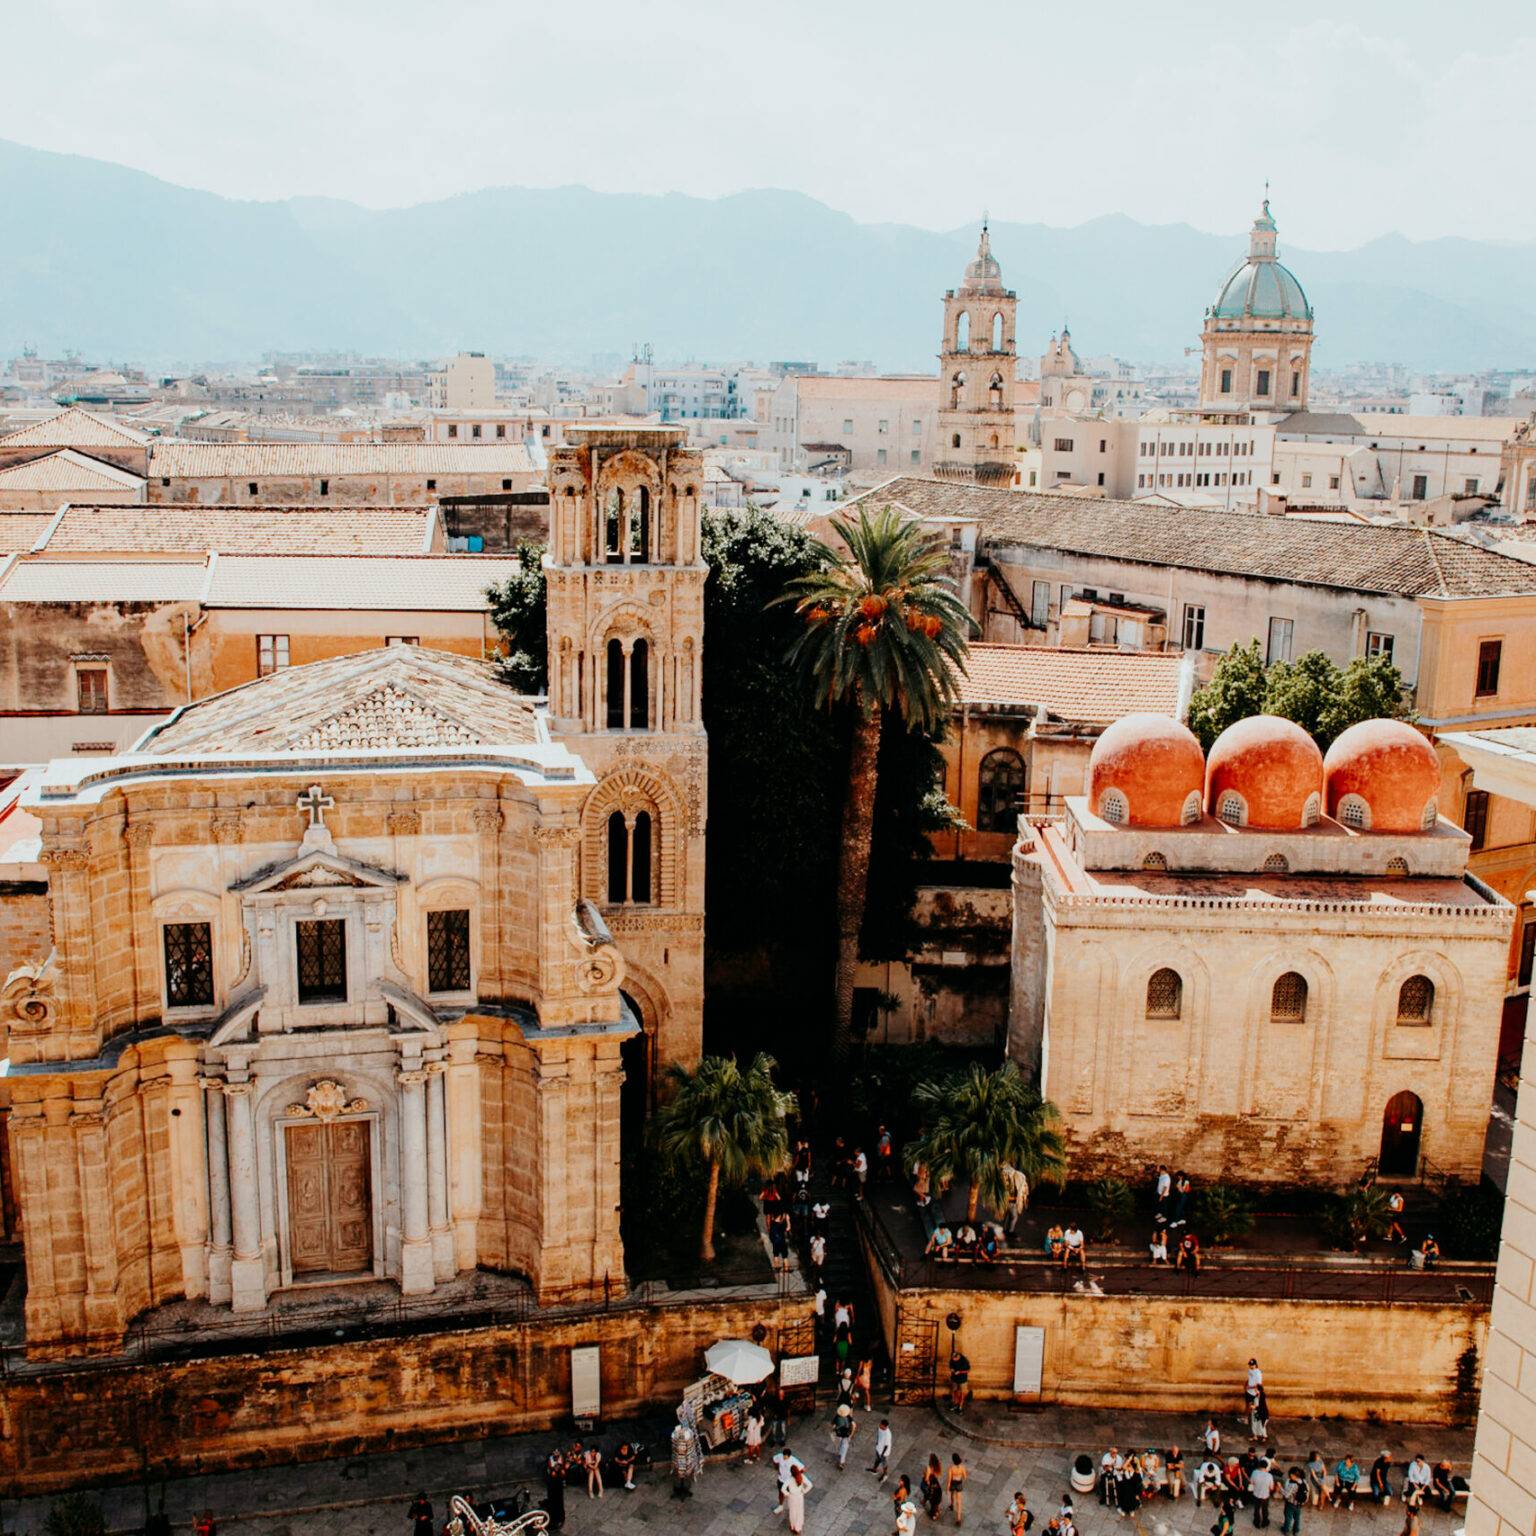 Ausblick auf die Innenstadt von Palermo mit vielen alten Gebäuden.